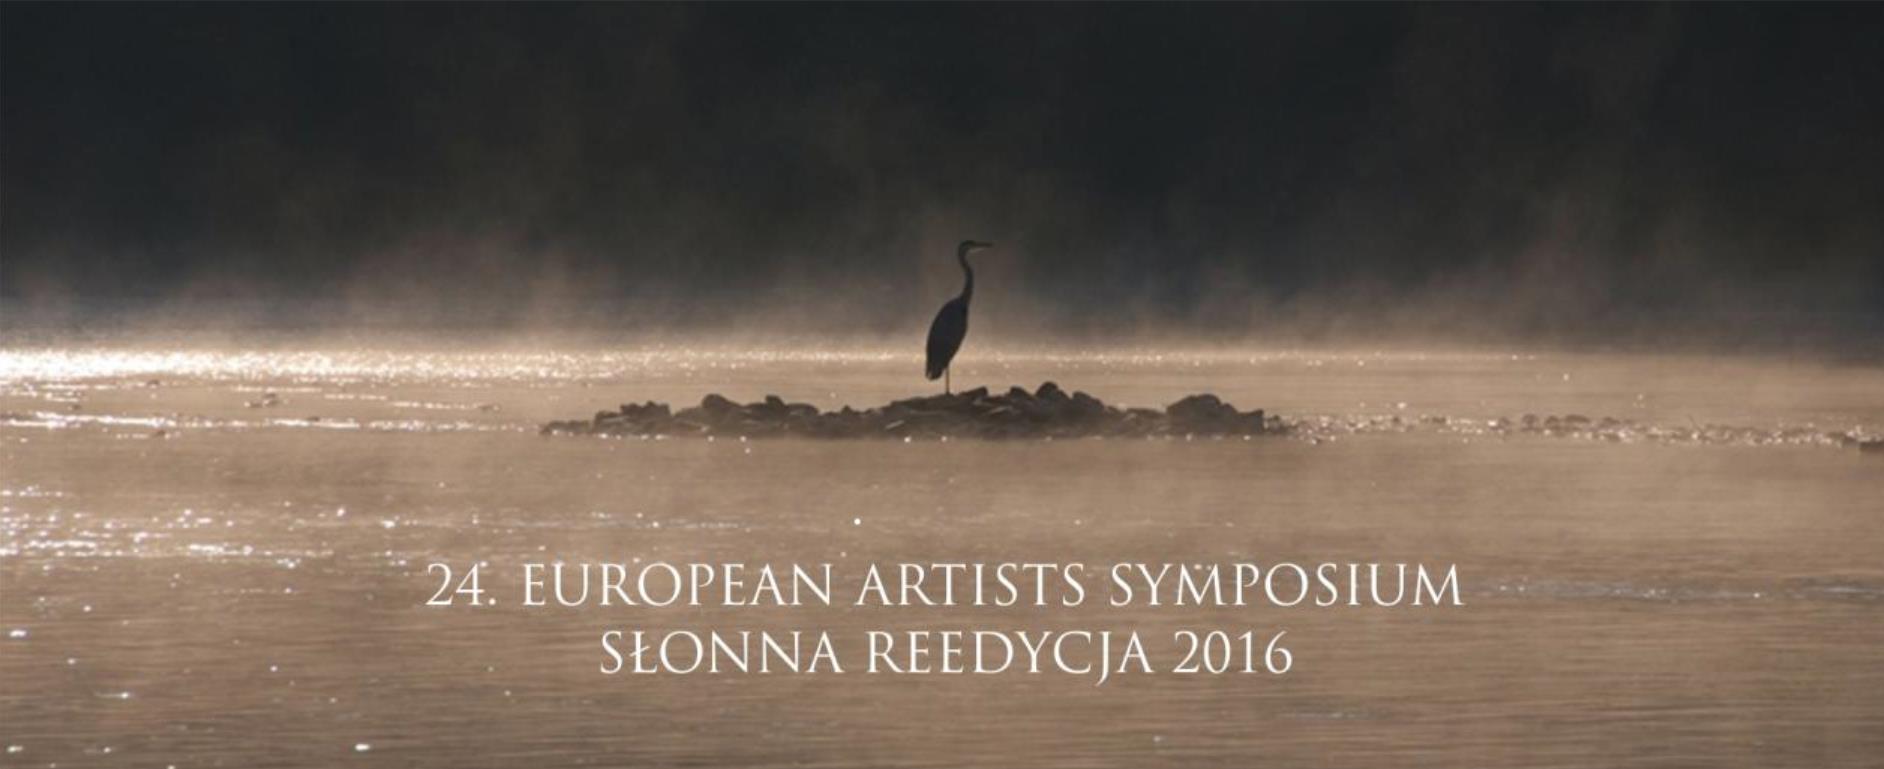 24. European Artists Symposium in Polen 2016